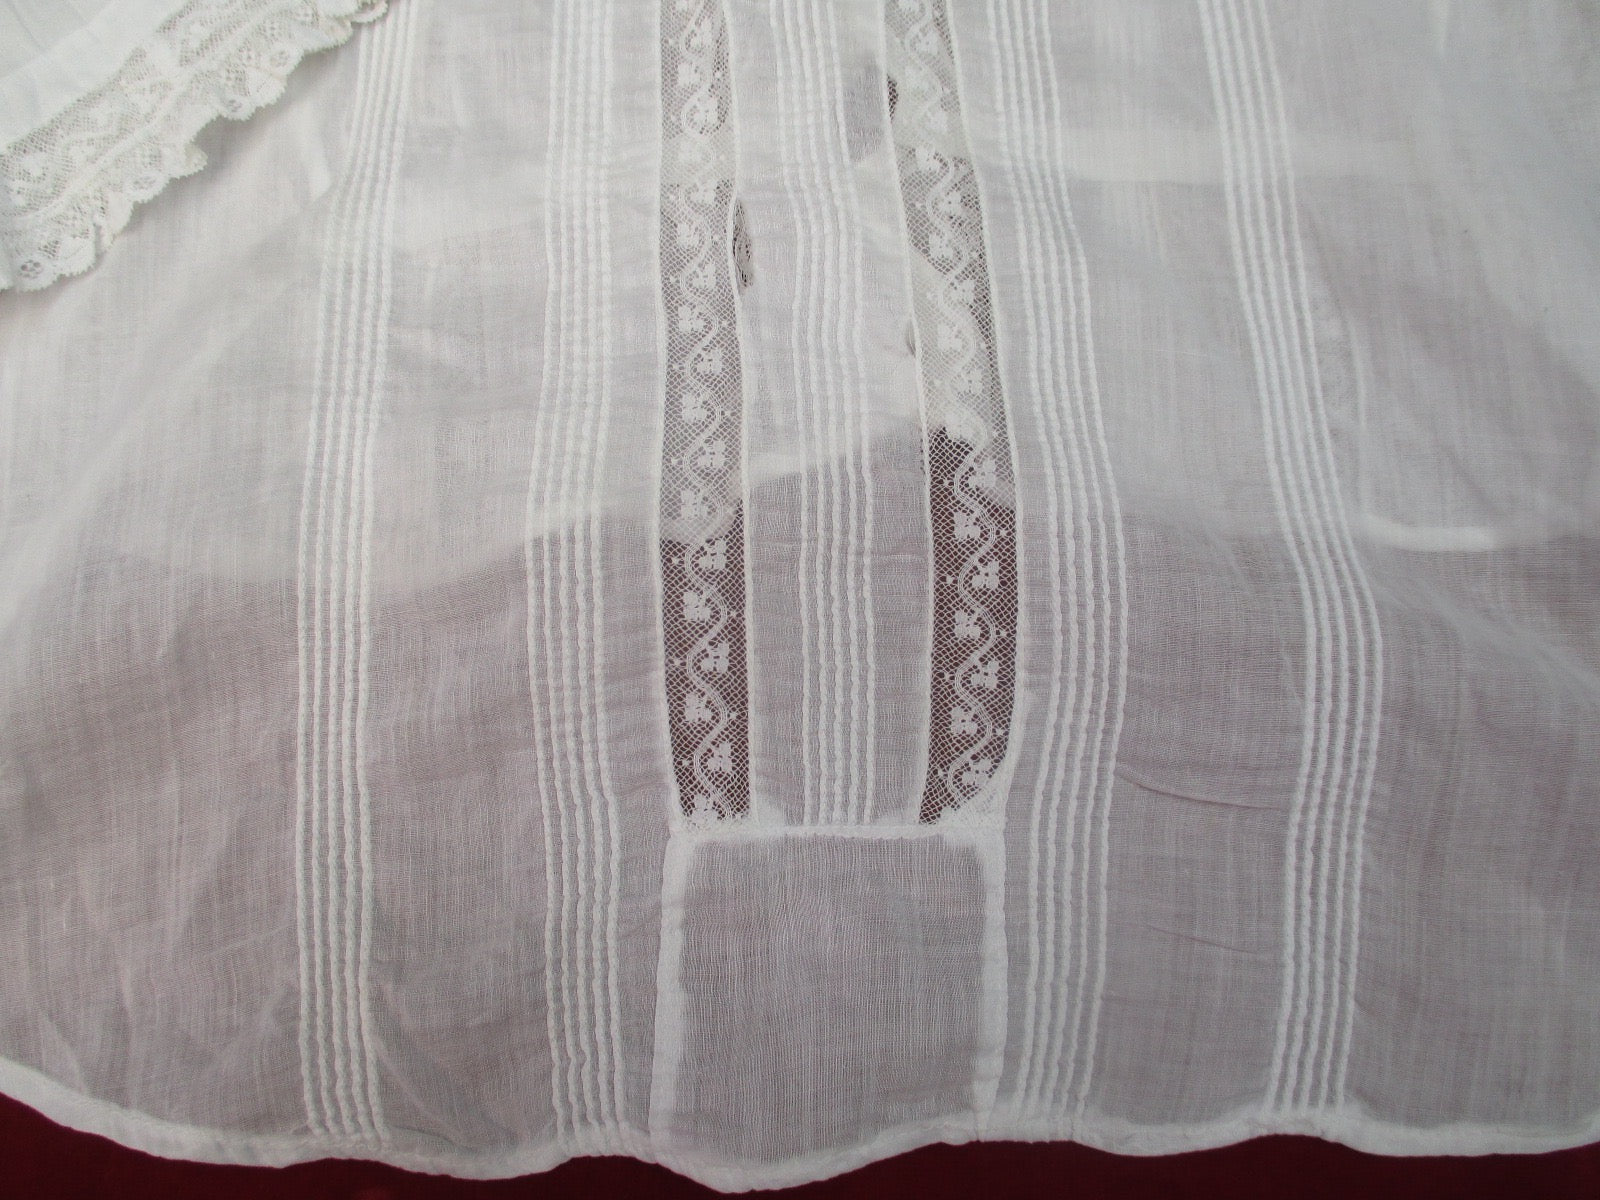 Antique Victorian waist blouse